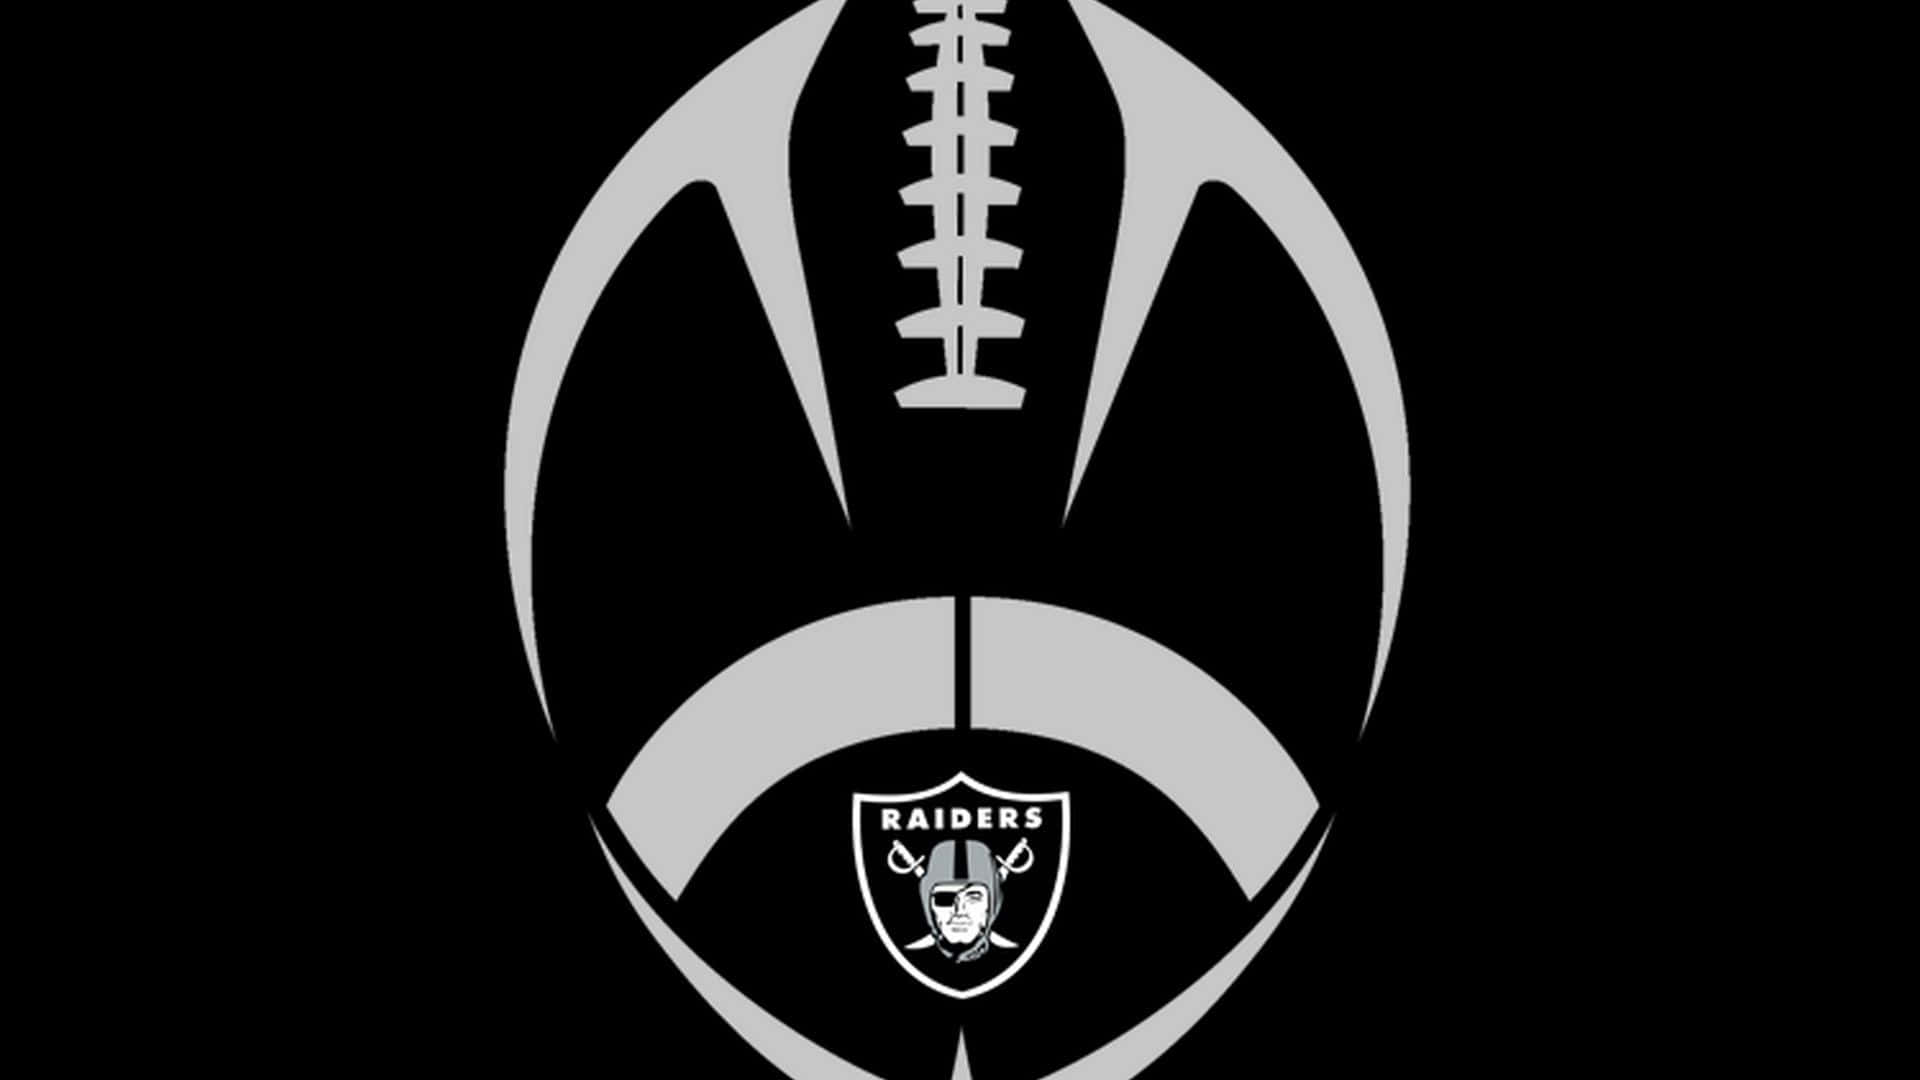 Raiders-logoet 1920 X 1080 Wallpaper